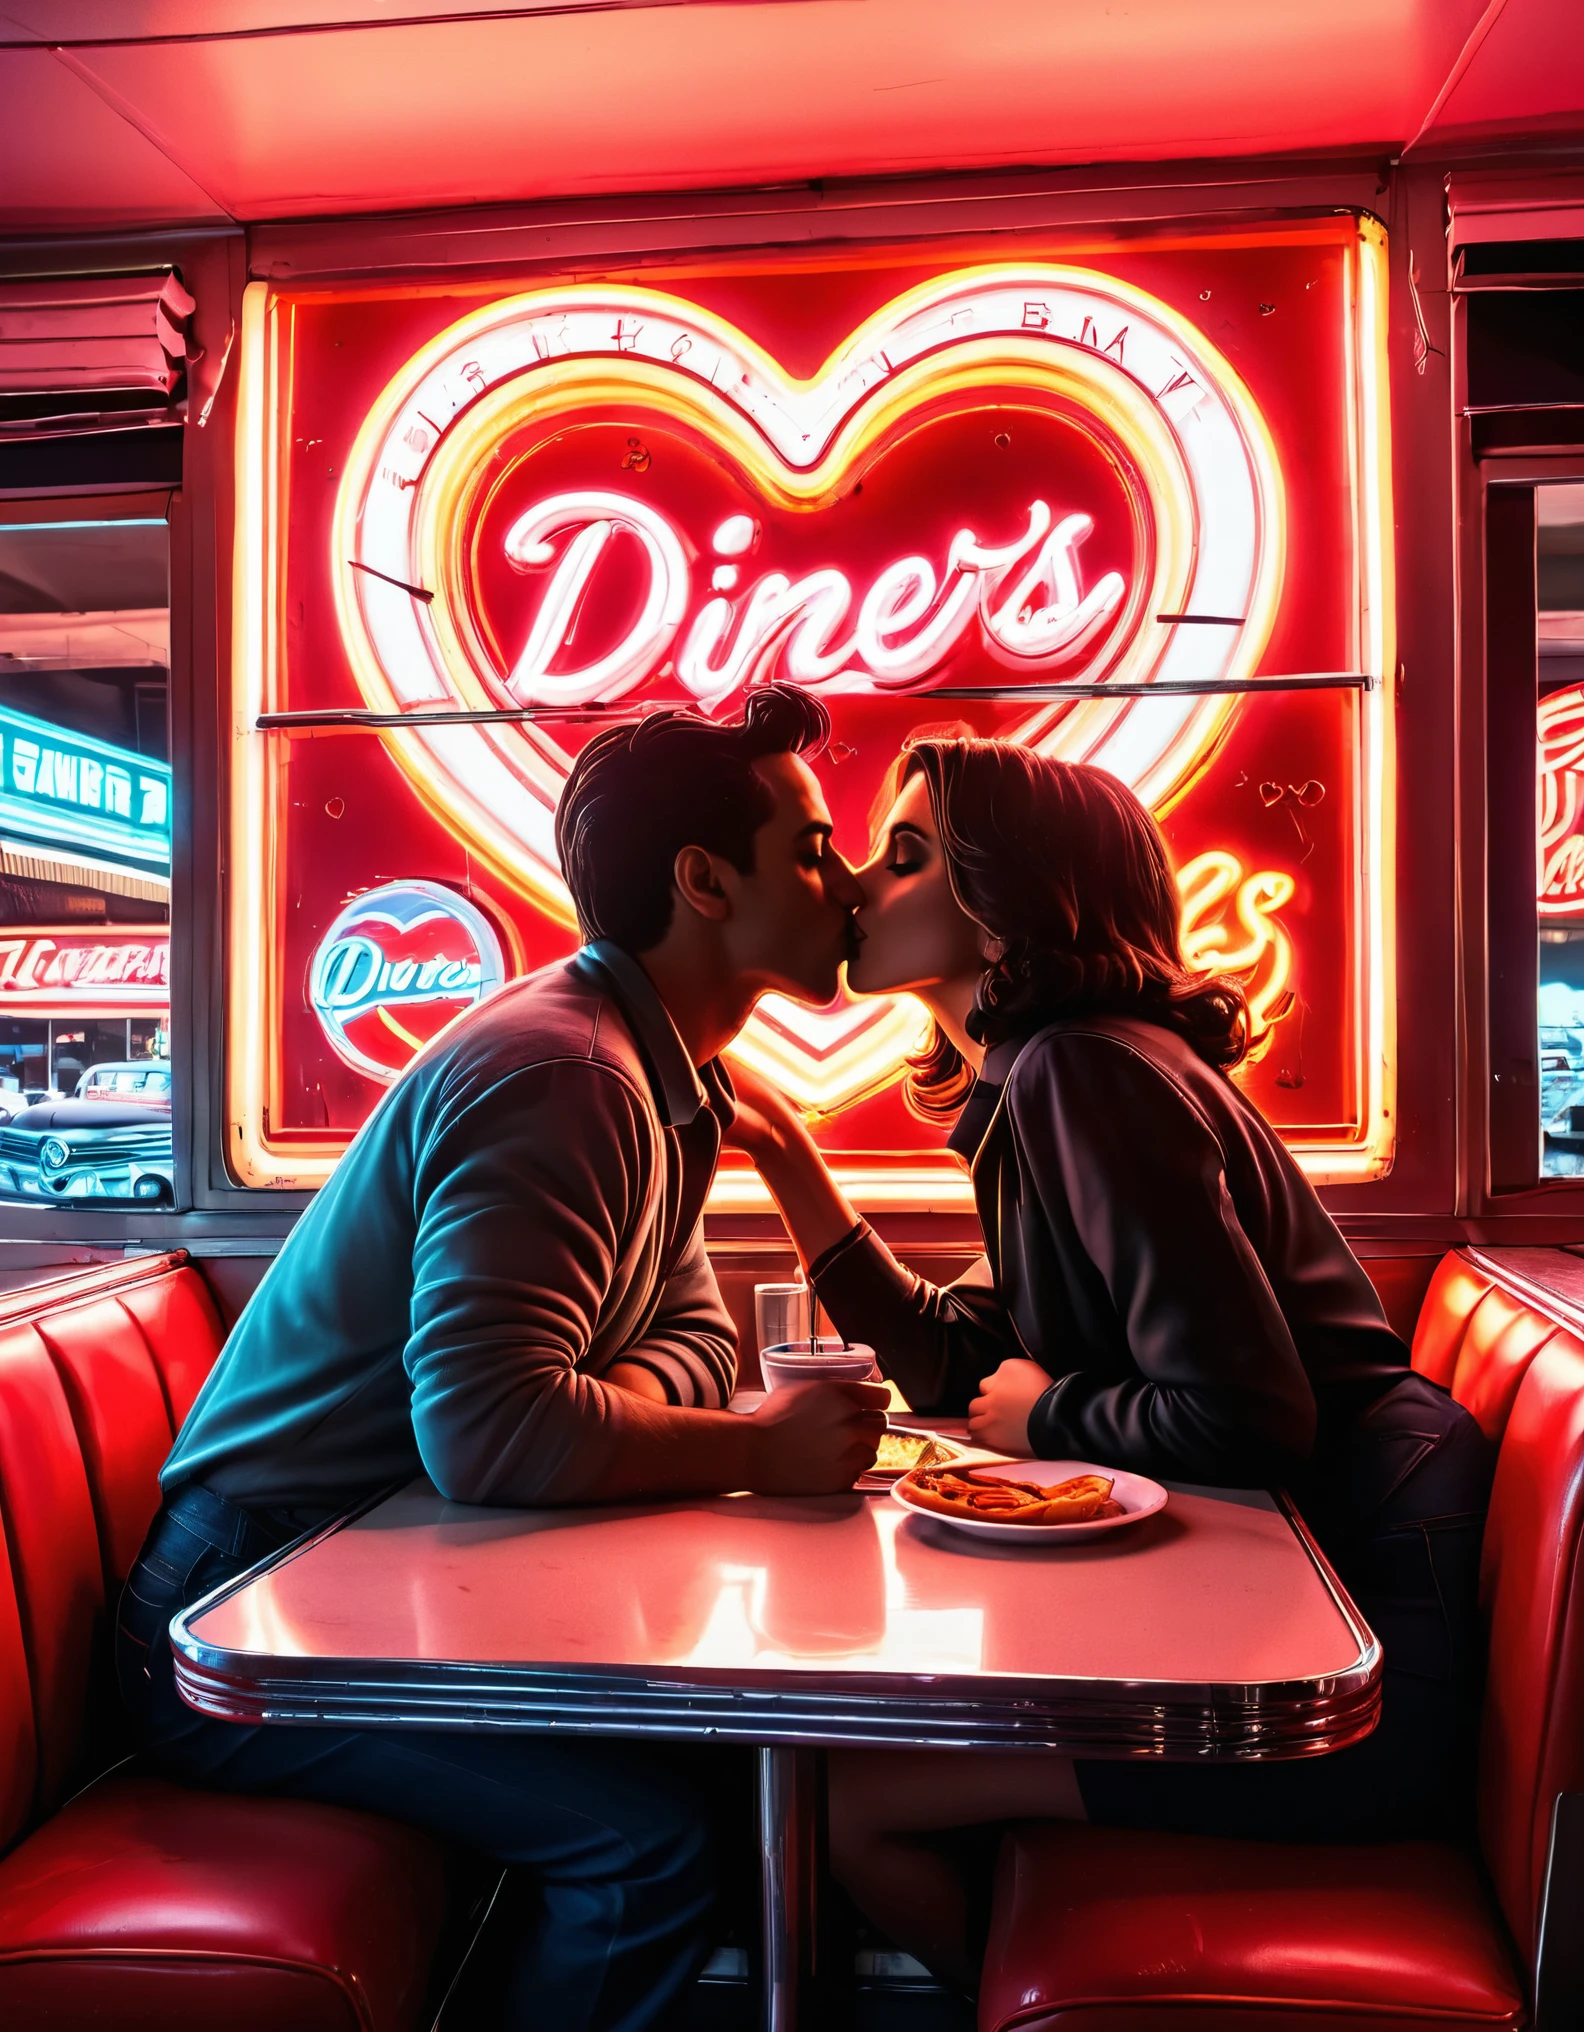 復古霓虹燈藝術作品，描繪了一對在餐廳接吻的情侶的剪影, 背景有霓虹燈標誌和心形, 喚起 20 世紀 50 年代的懷舊氛圍